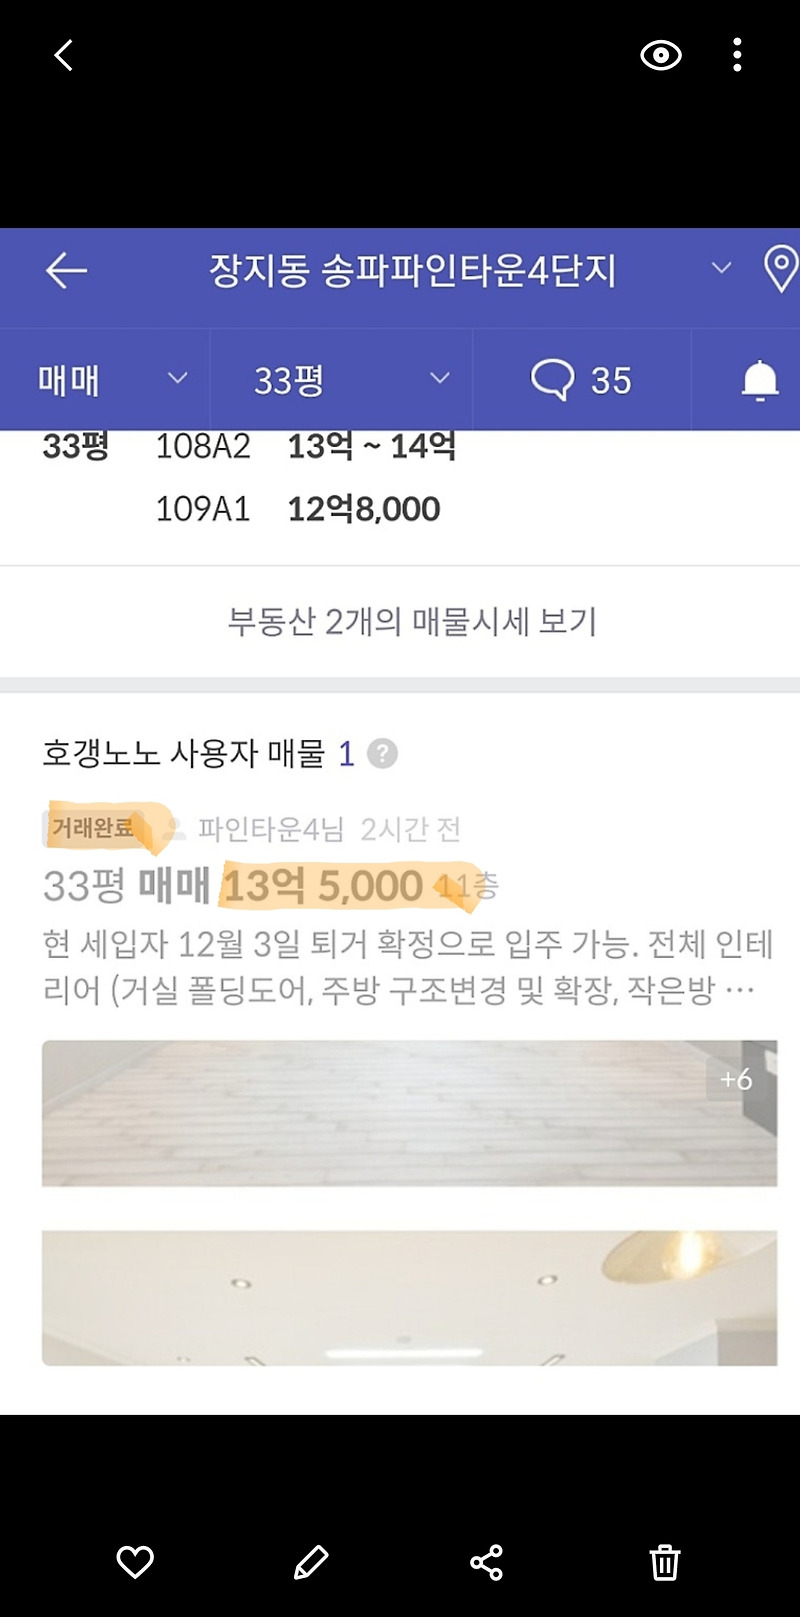 역대최고 유동성(35.6%)과 송파파인타운4단지 신고가!